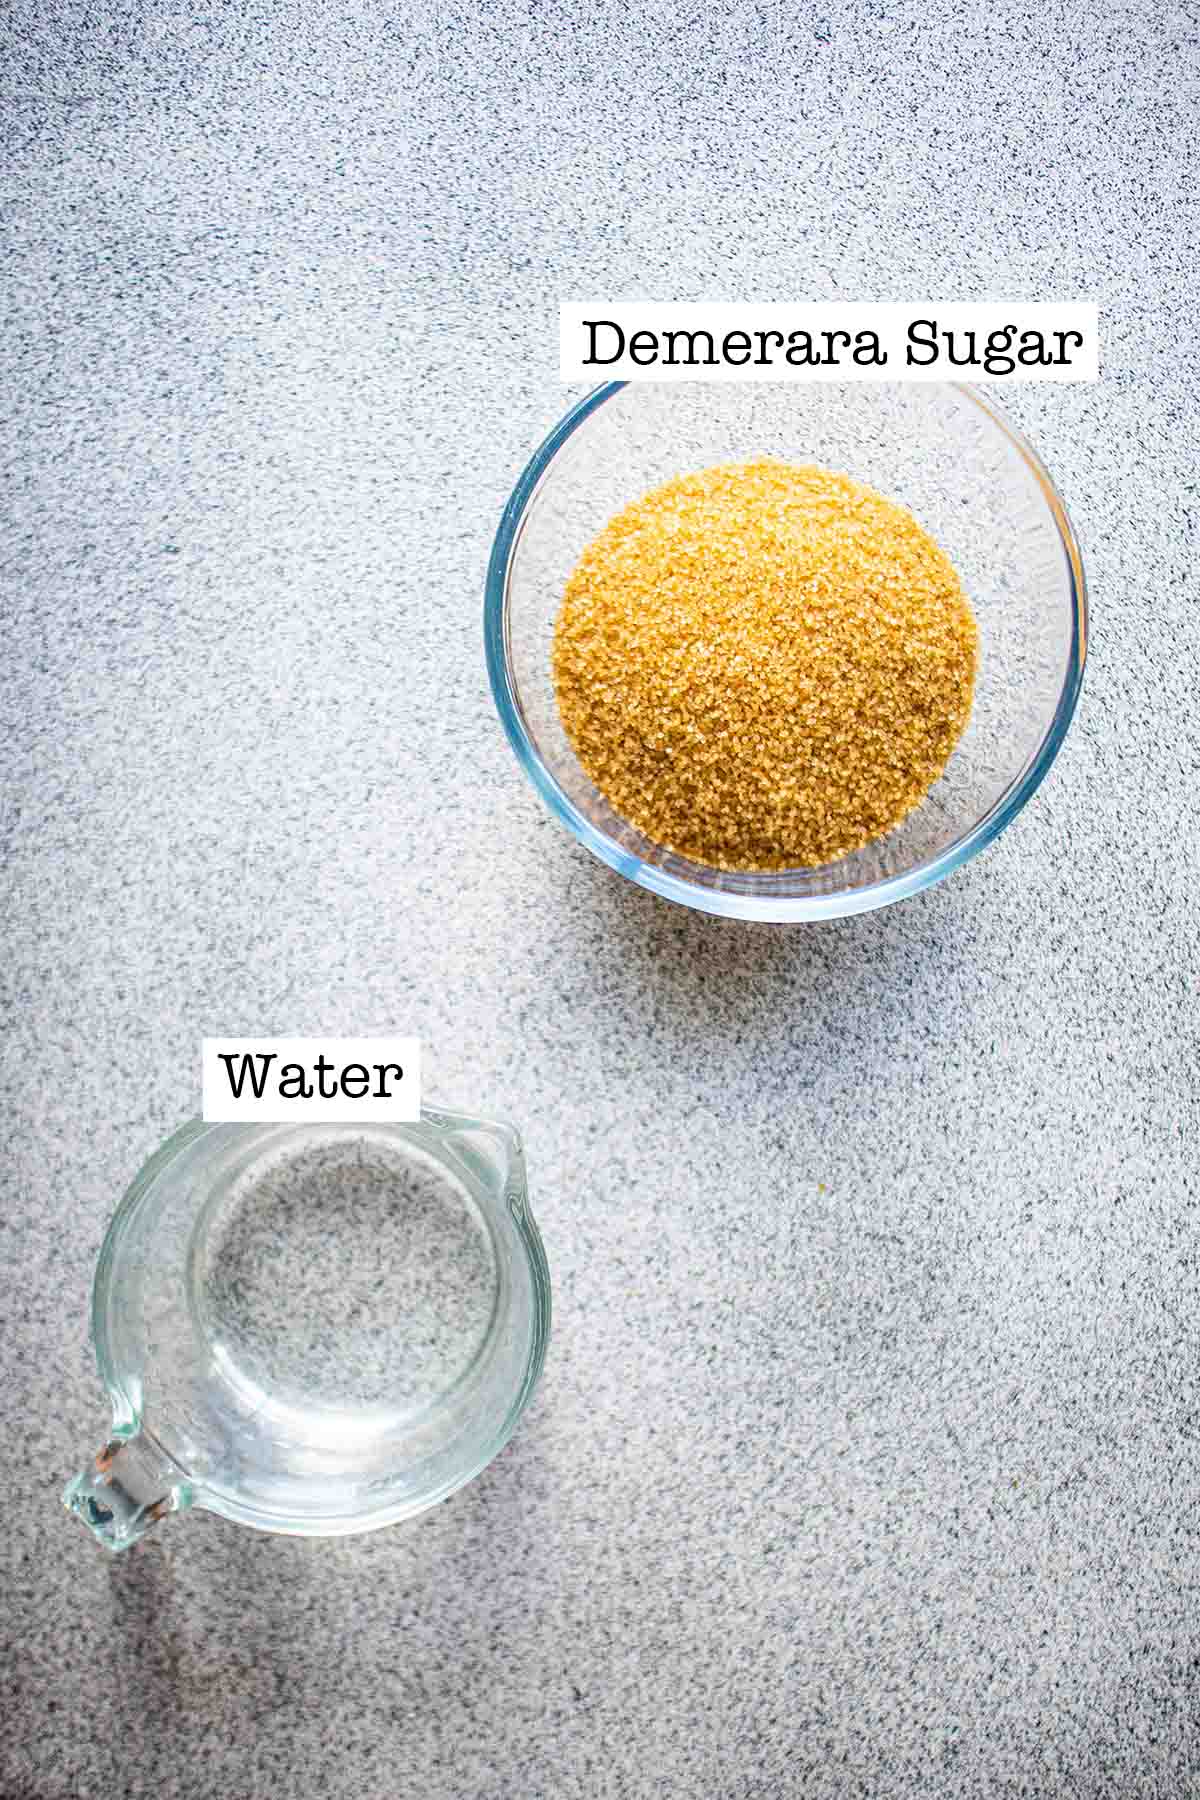 demerara simple syrup ingredients